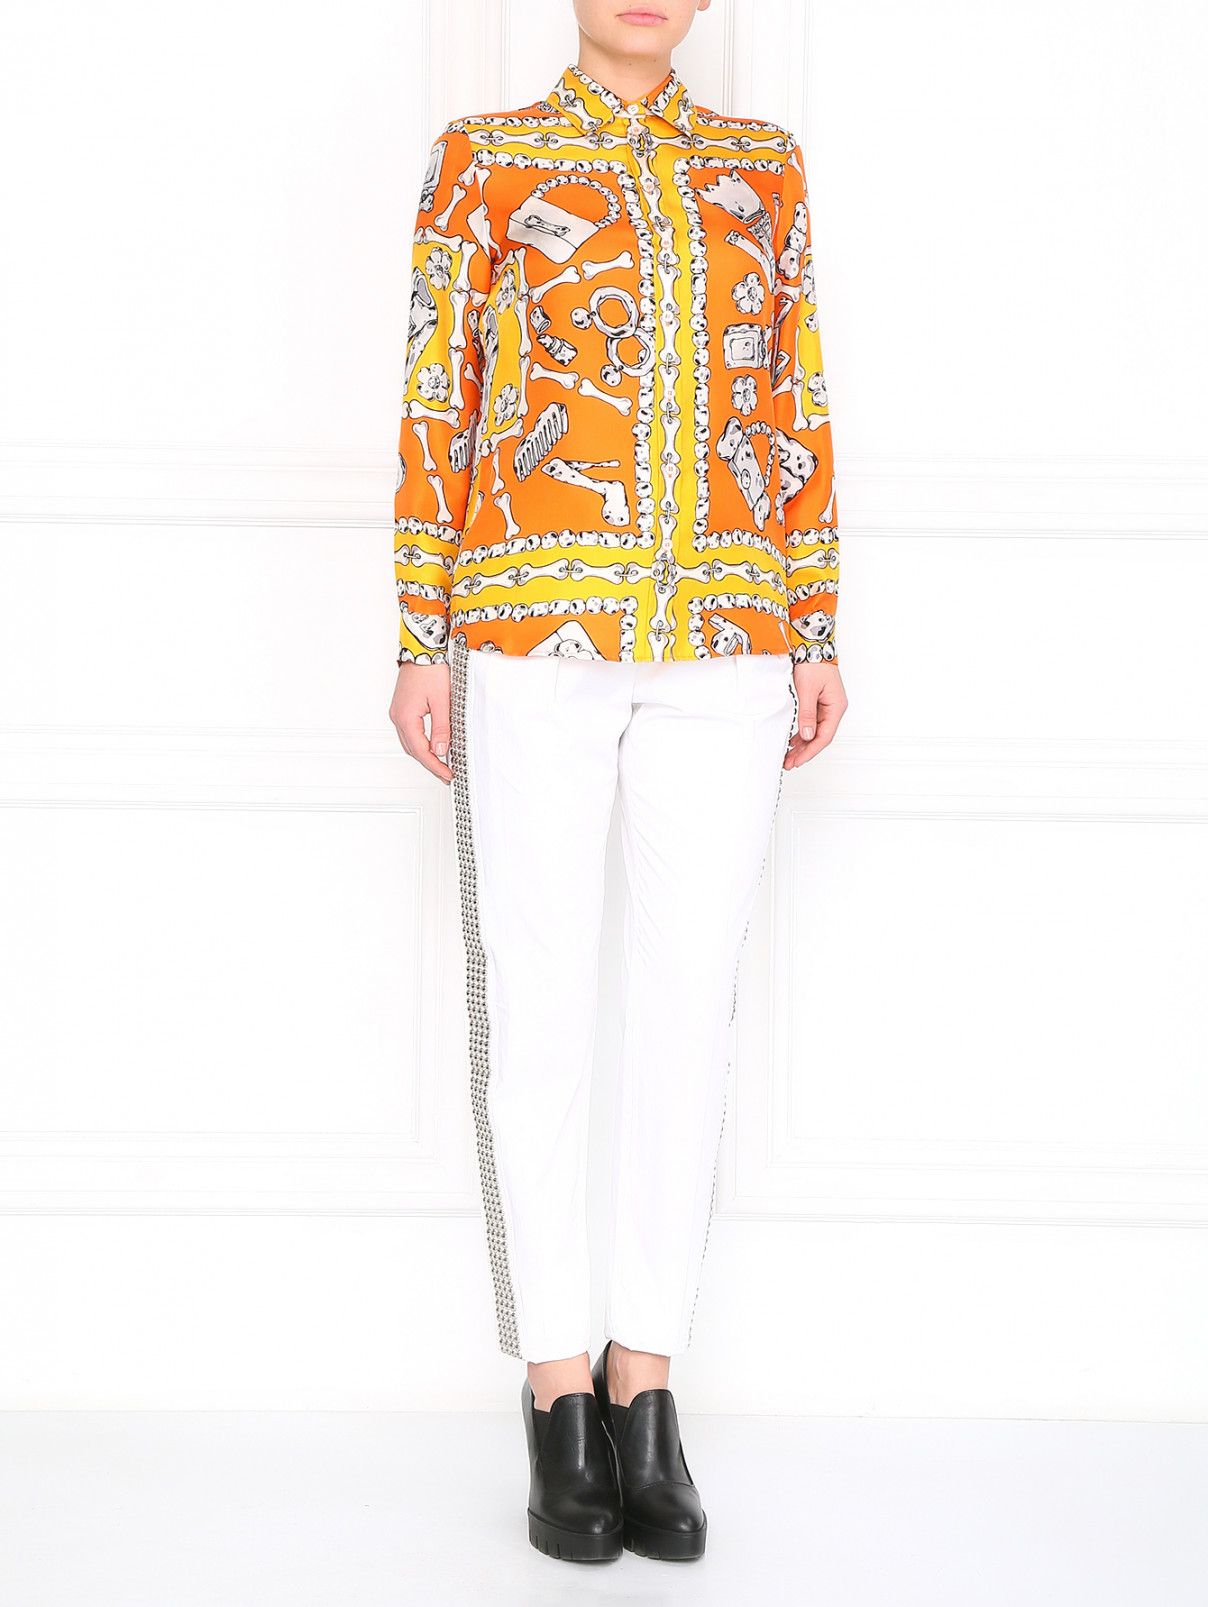 Шелковая блуза с принтом Moschino Cheap&Chic  –  Модель Общий вид  – Цвет:  Оранжевый